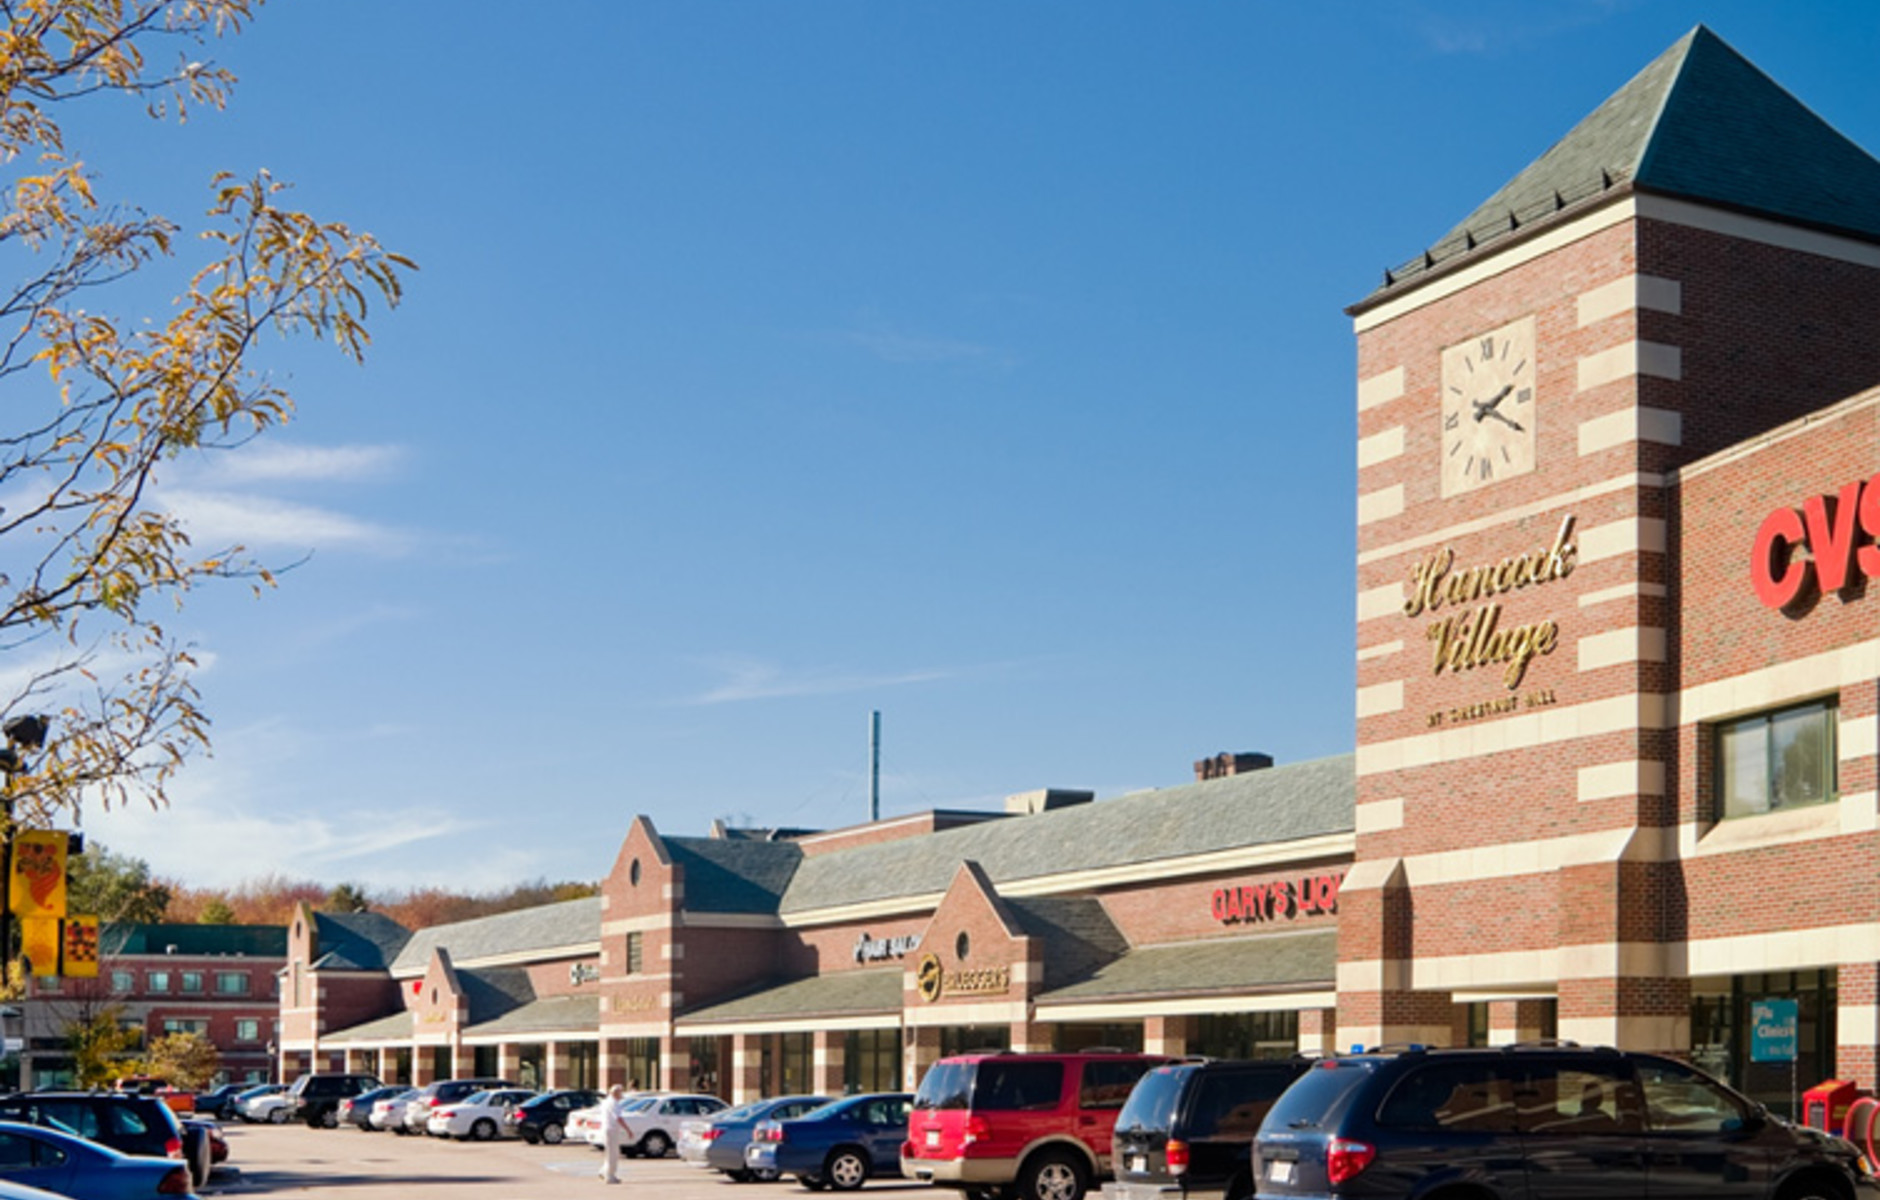 Hancock Village Shopping Center